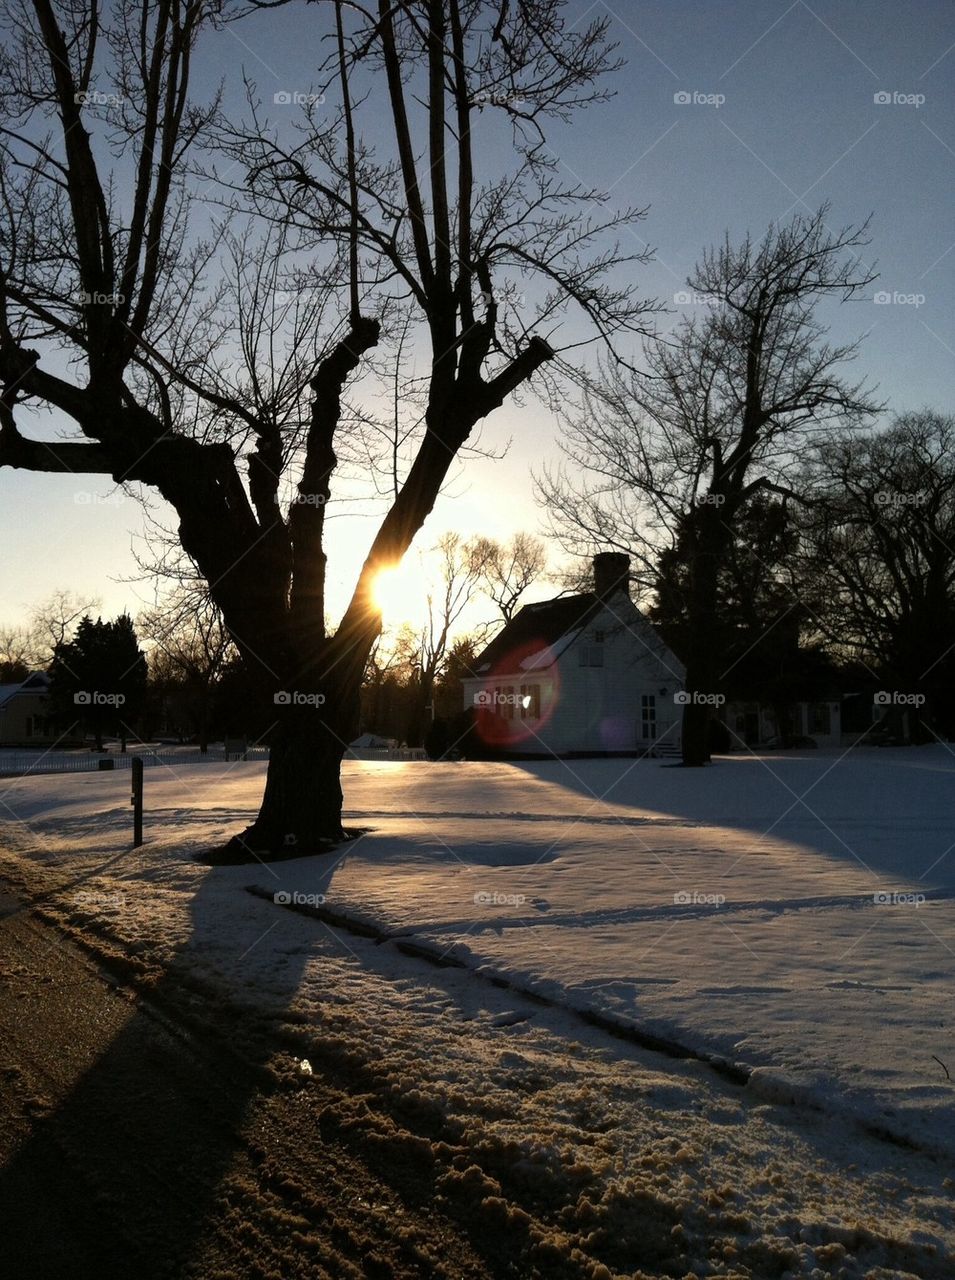 Yorktown cottage in snow